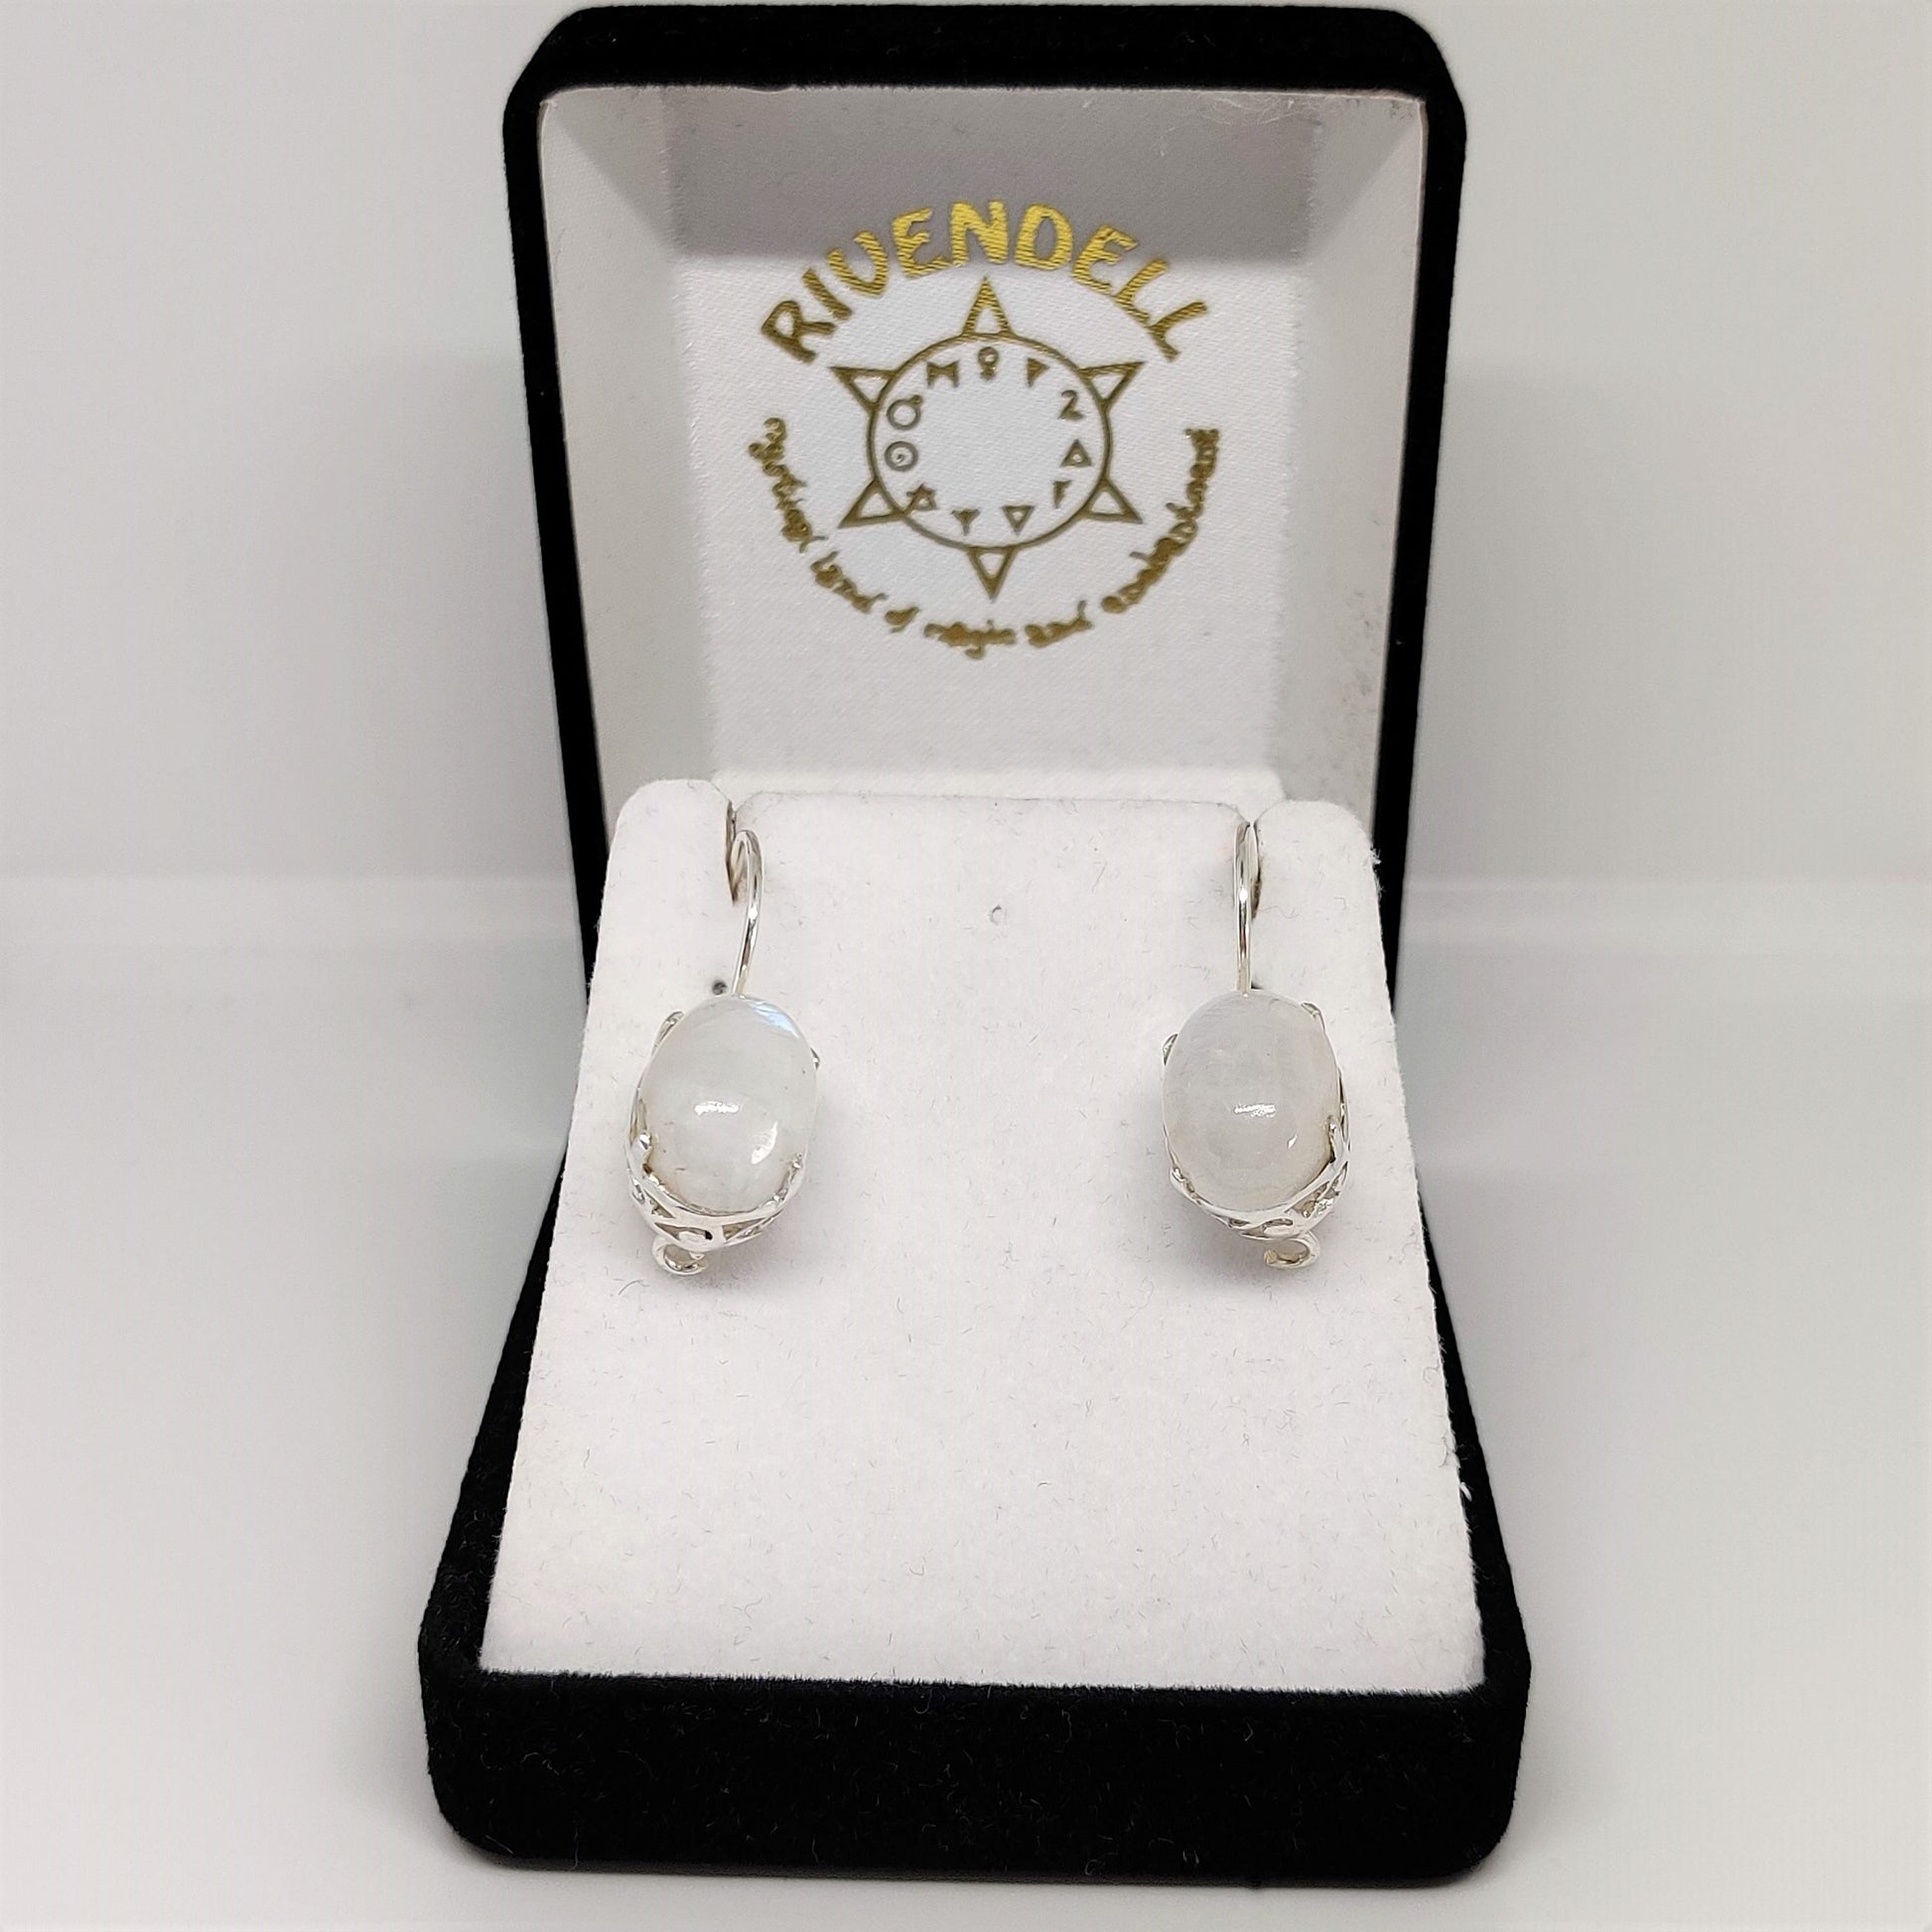 Moonstone 925 Sterling Silver Earrings - Rivendell Shop